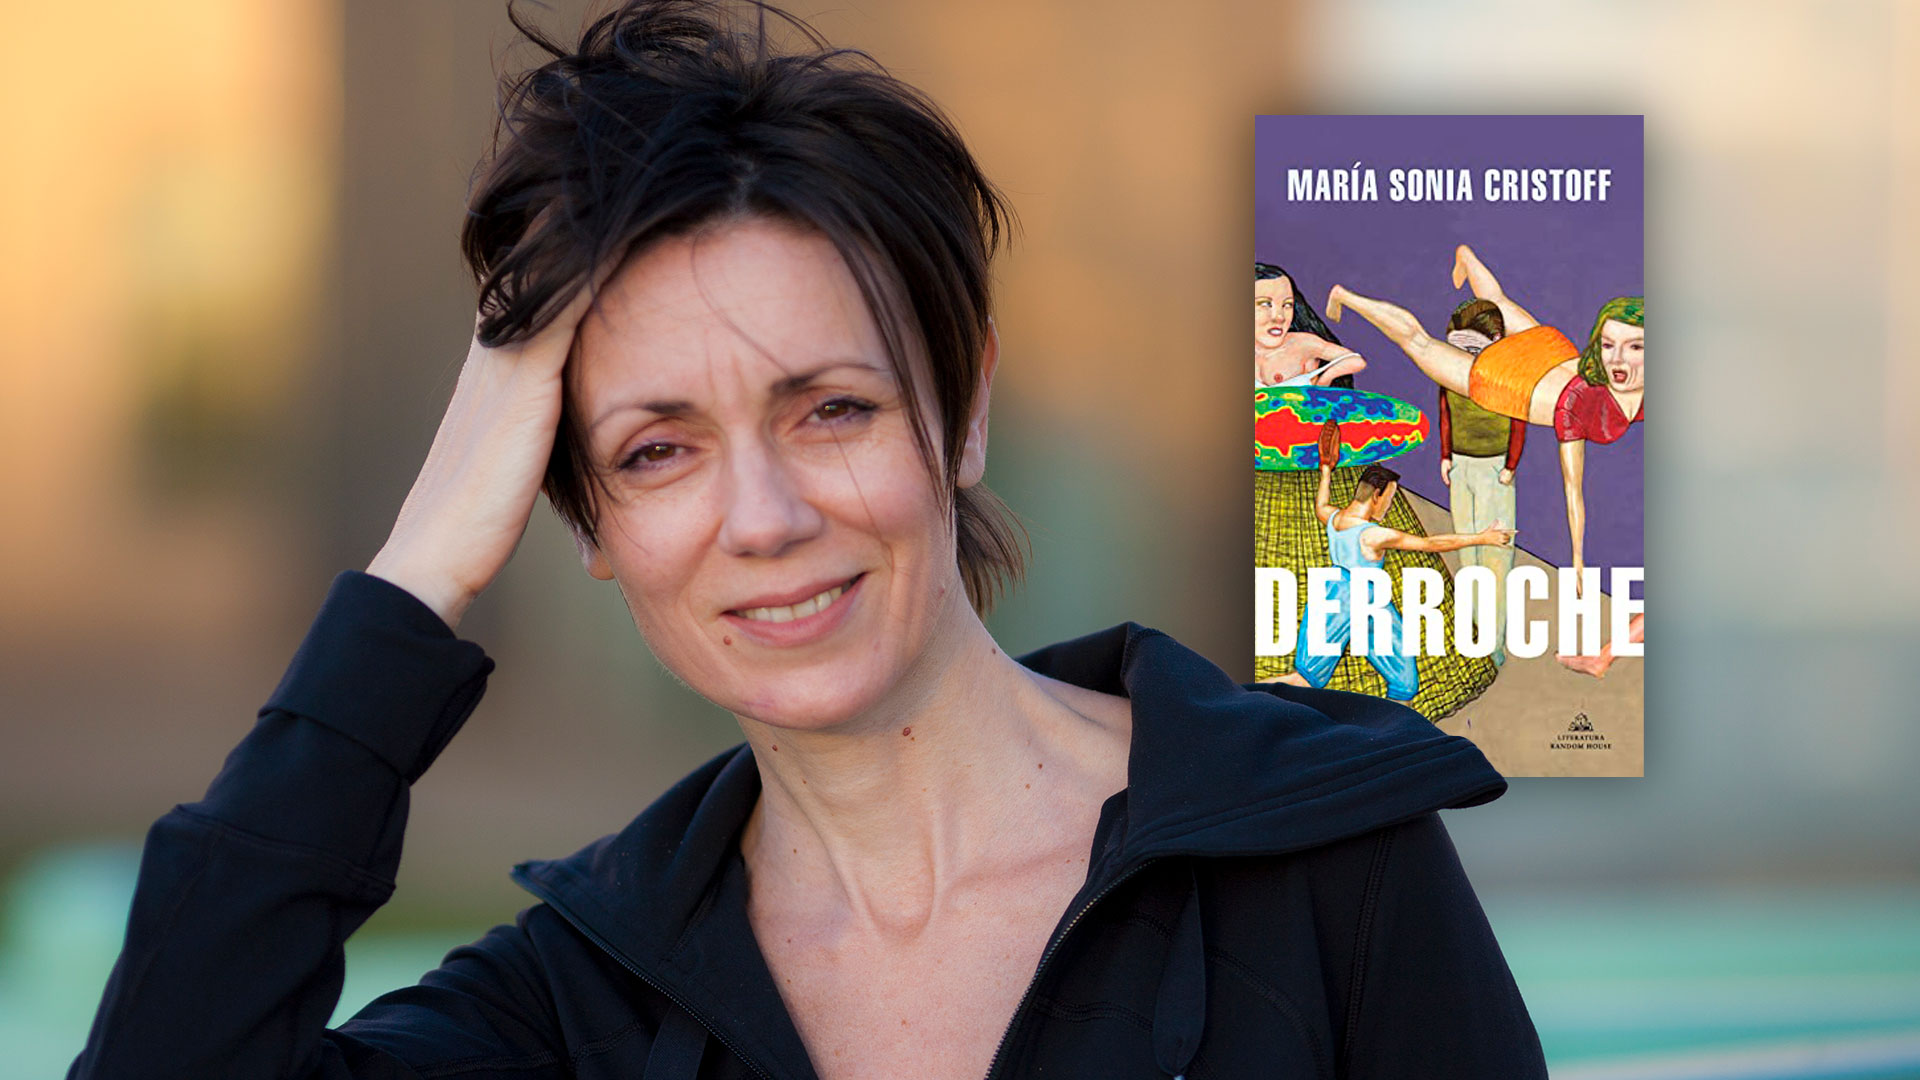 Un tanque en una casa, una banda de rock y una utopía setentista para “dinamitar” la literatura: bienvenidos a “Derroche”, de María Sonia Cristoff